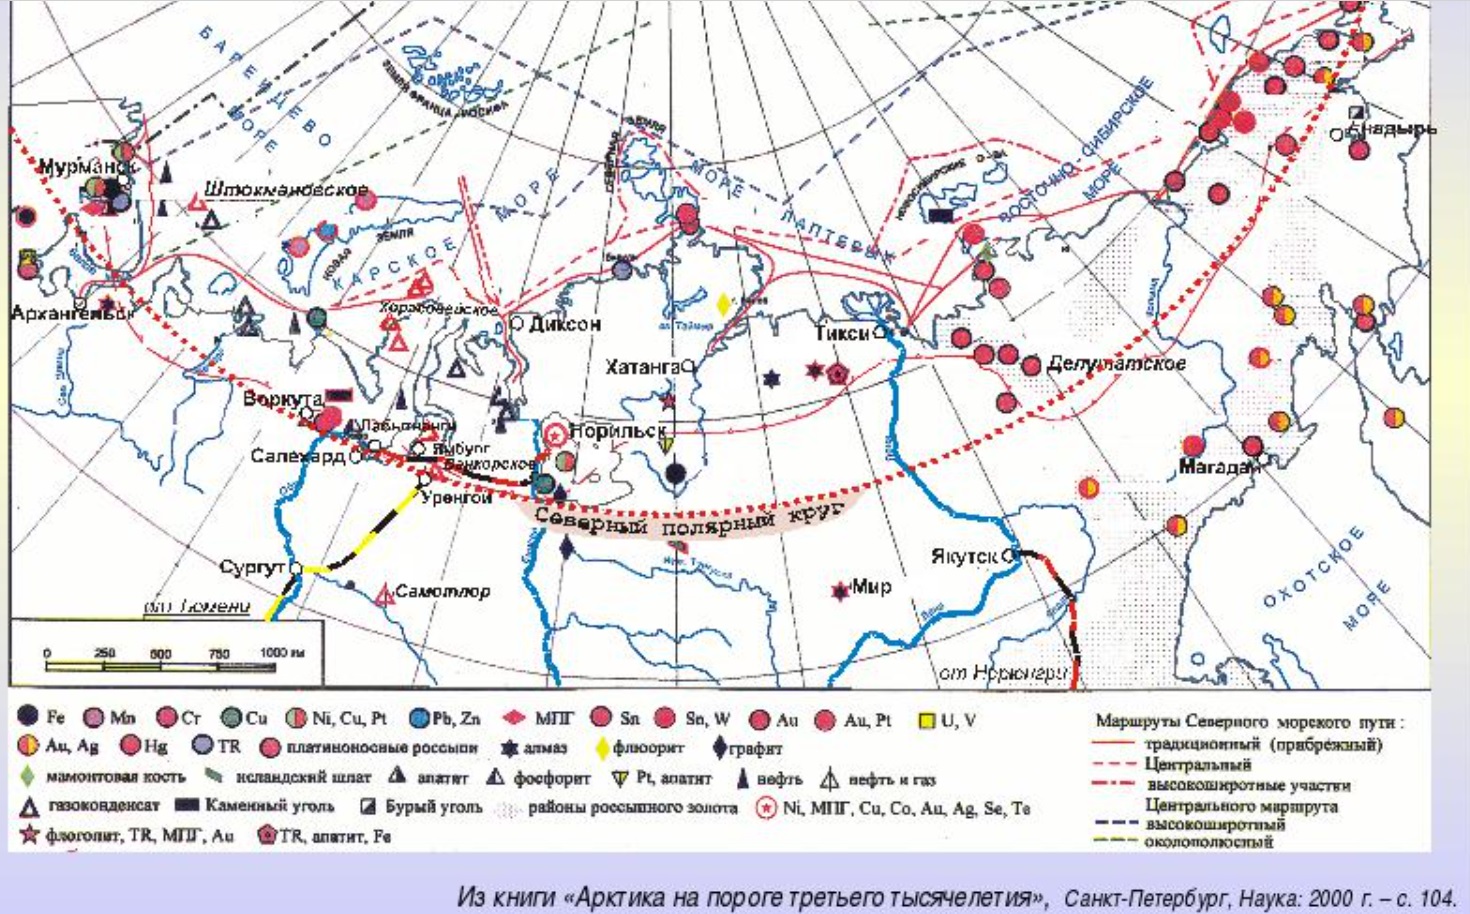 Назовите природную зону в которой расположено месторождение. Природные ресурсы Арктики карта. Карта полезных ископаемых Арктики. Месторождения на севере России. Карта месторождений полезных ископаемых Арктики.